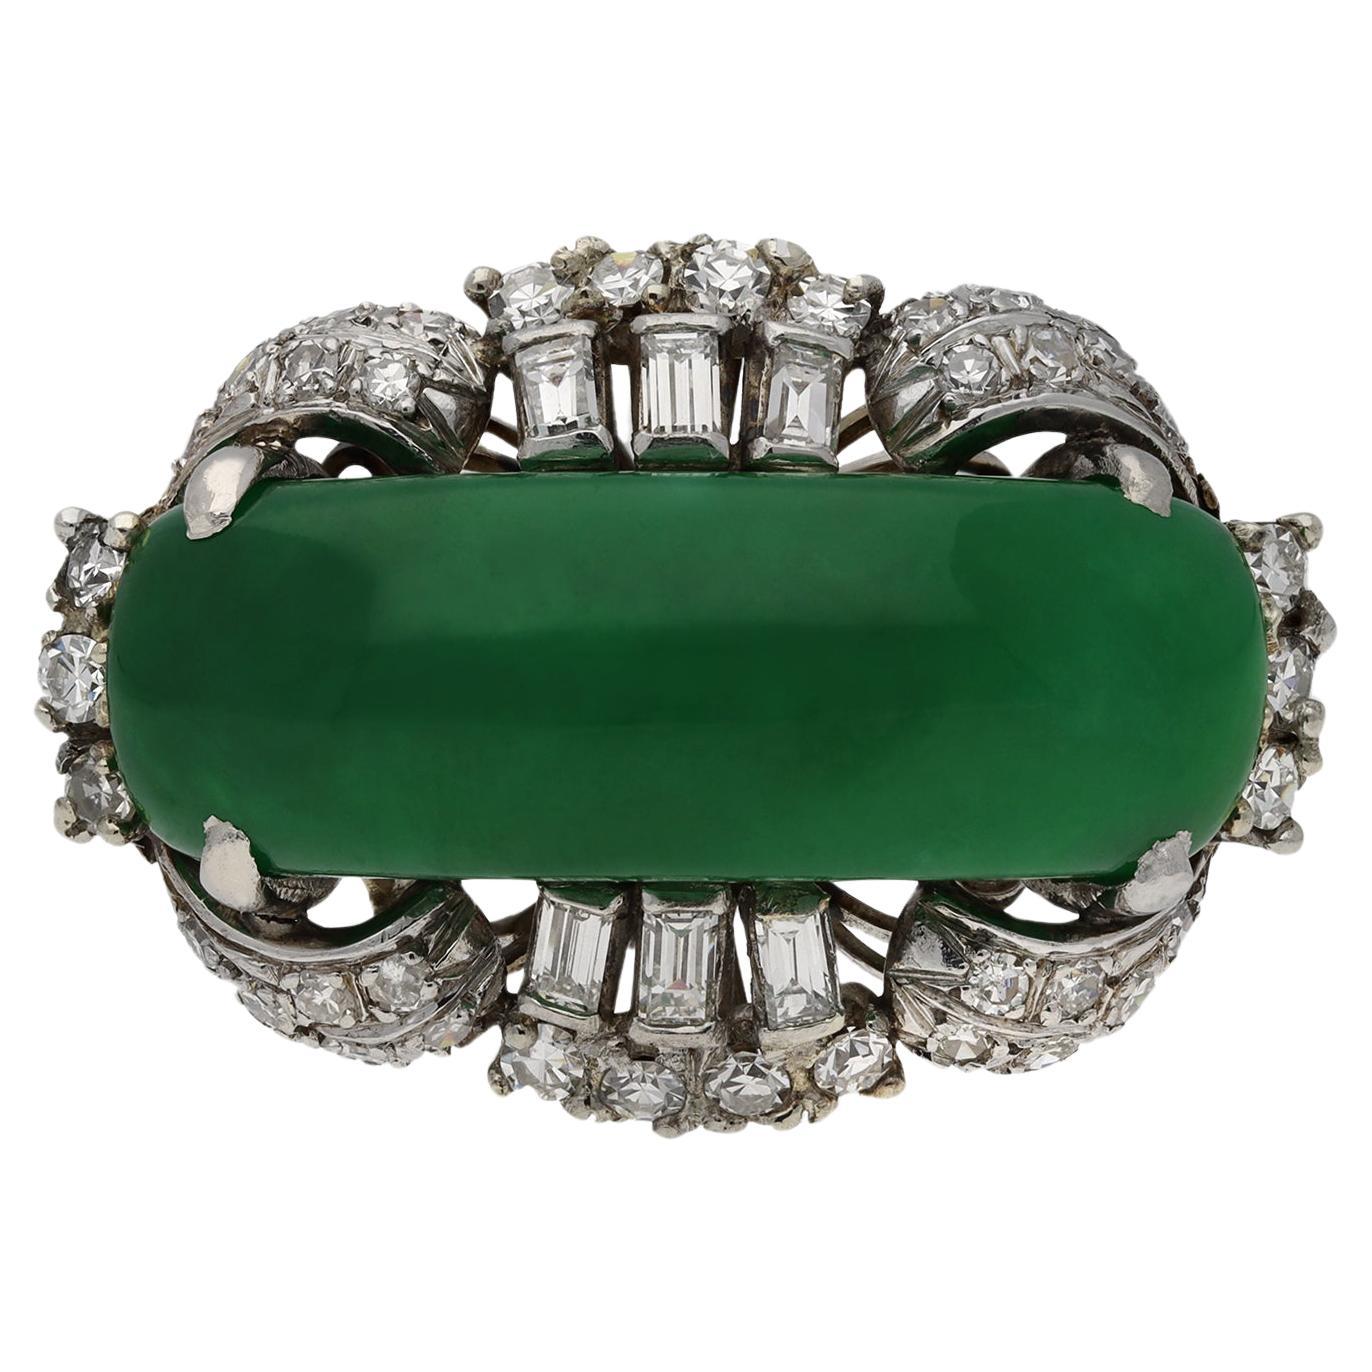 Jade and diamond ring, circa 1950.